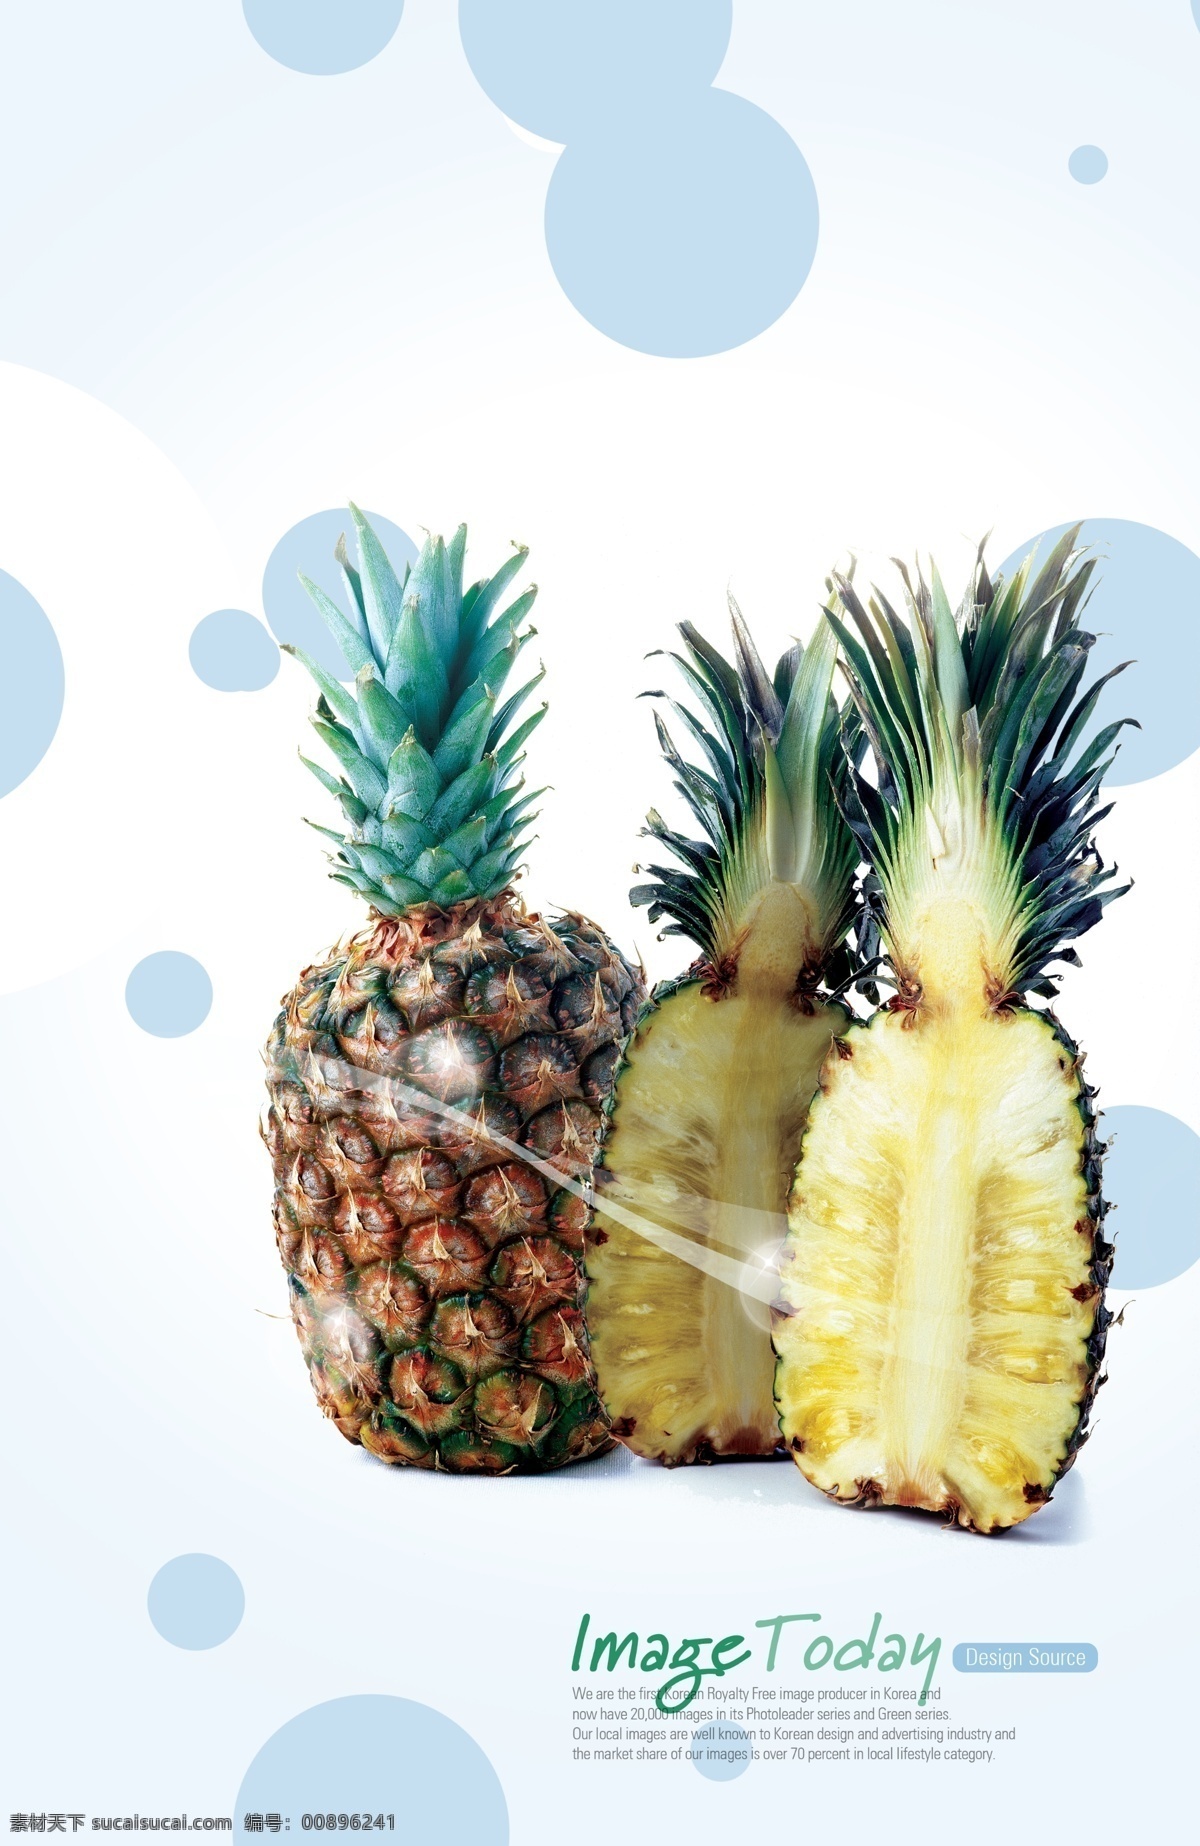 水果 设计素材 菠萝 蓝色 生物世界 水果设计素材 水果模板下载 psd源文件